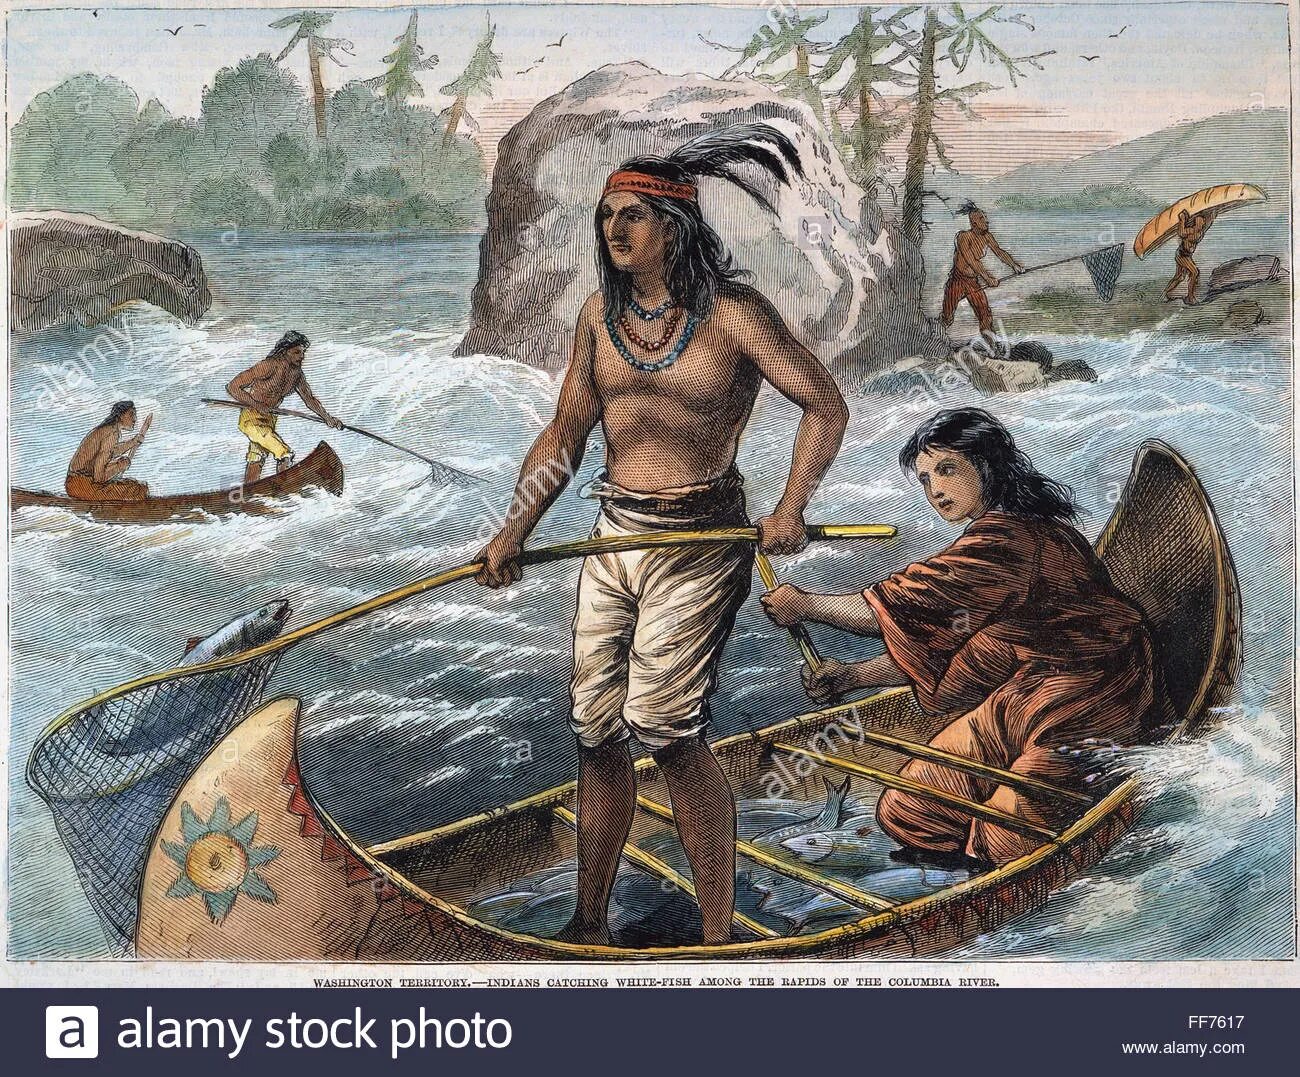 С давних времен люди. Древние каноэ полинезийцев. Индейцы вампаноаги. Североамериканские индейцы до Колумба. Лодки индейцев Южной Америки.